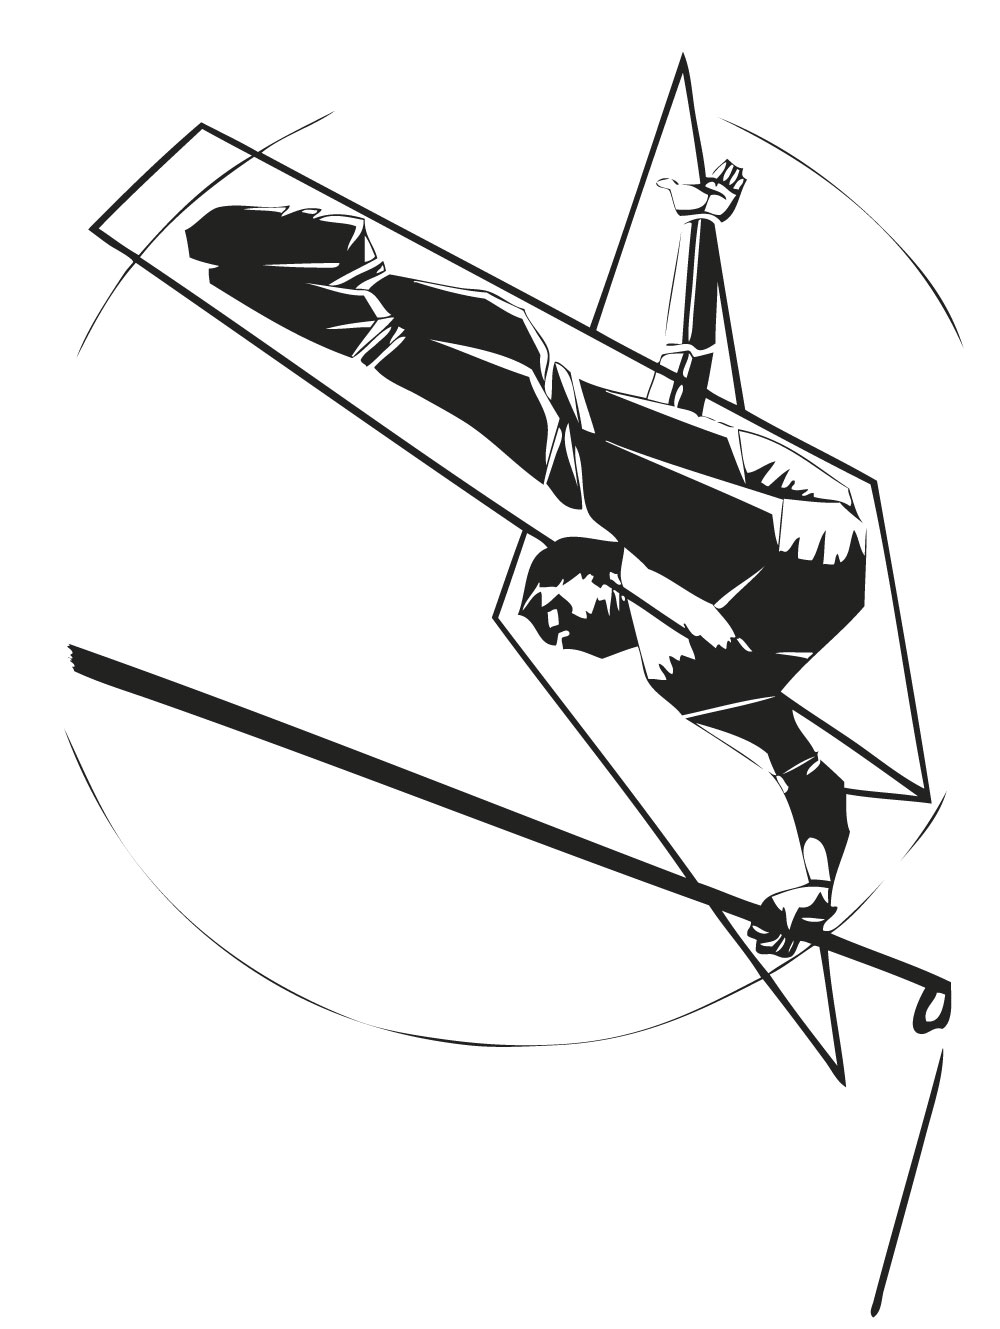 Studio Prépresse Illustration "saut de flèche" réalisée sous illustrator